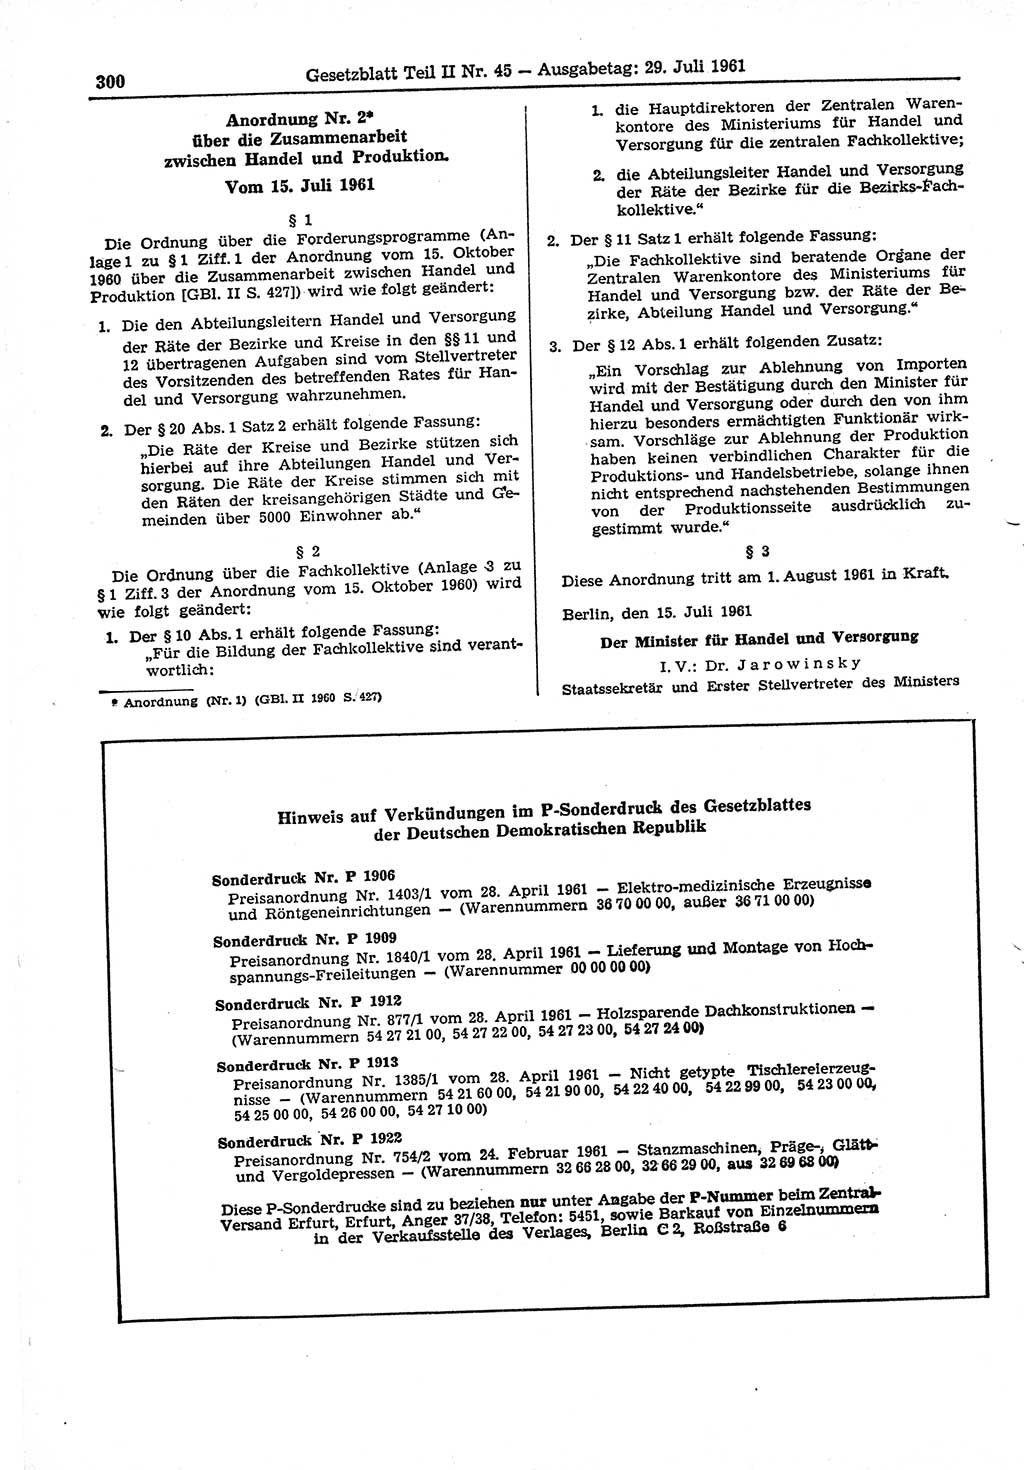 Gesetzblatt (GBl.) der Deutschen Demokratischen Republik (DDR) Teil ⅠⅠ 1961, Seite 300 (GBl. DDR ⅠⅠ 1961, S. 300)